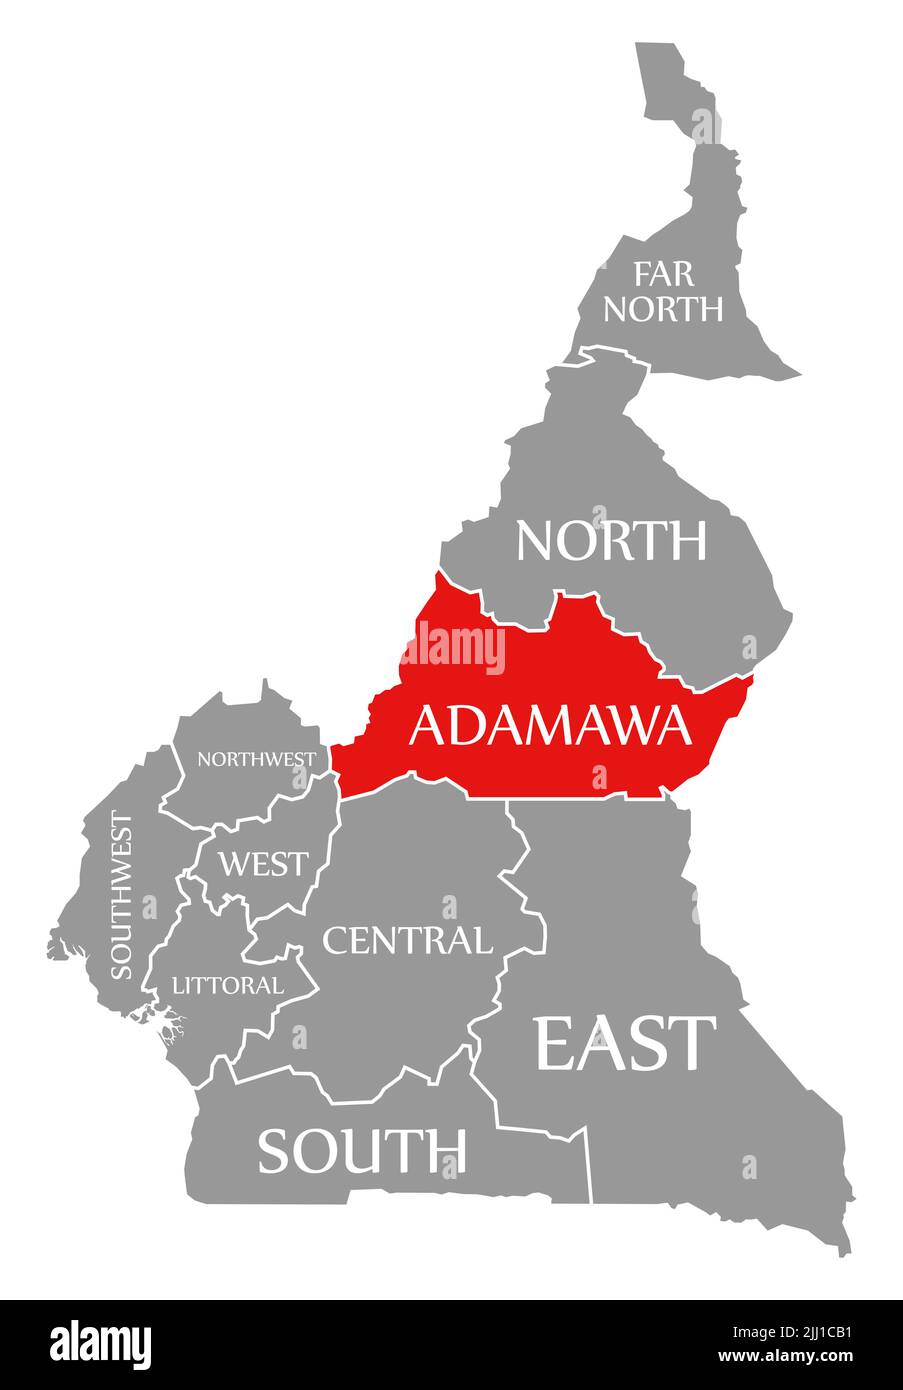 La región de Adamawa se destaca en rojo en el mapa de Camerún Foto de stock